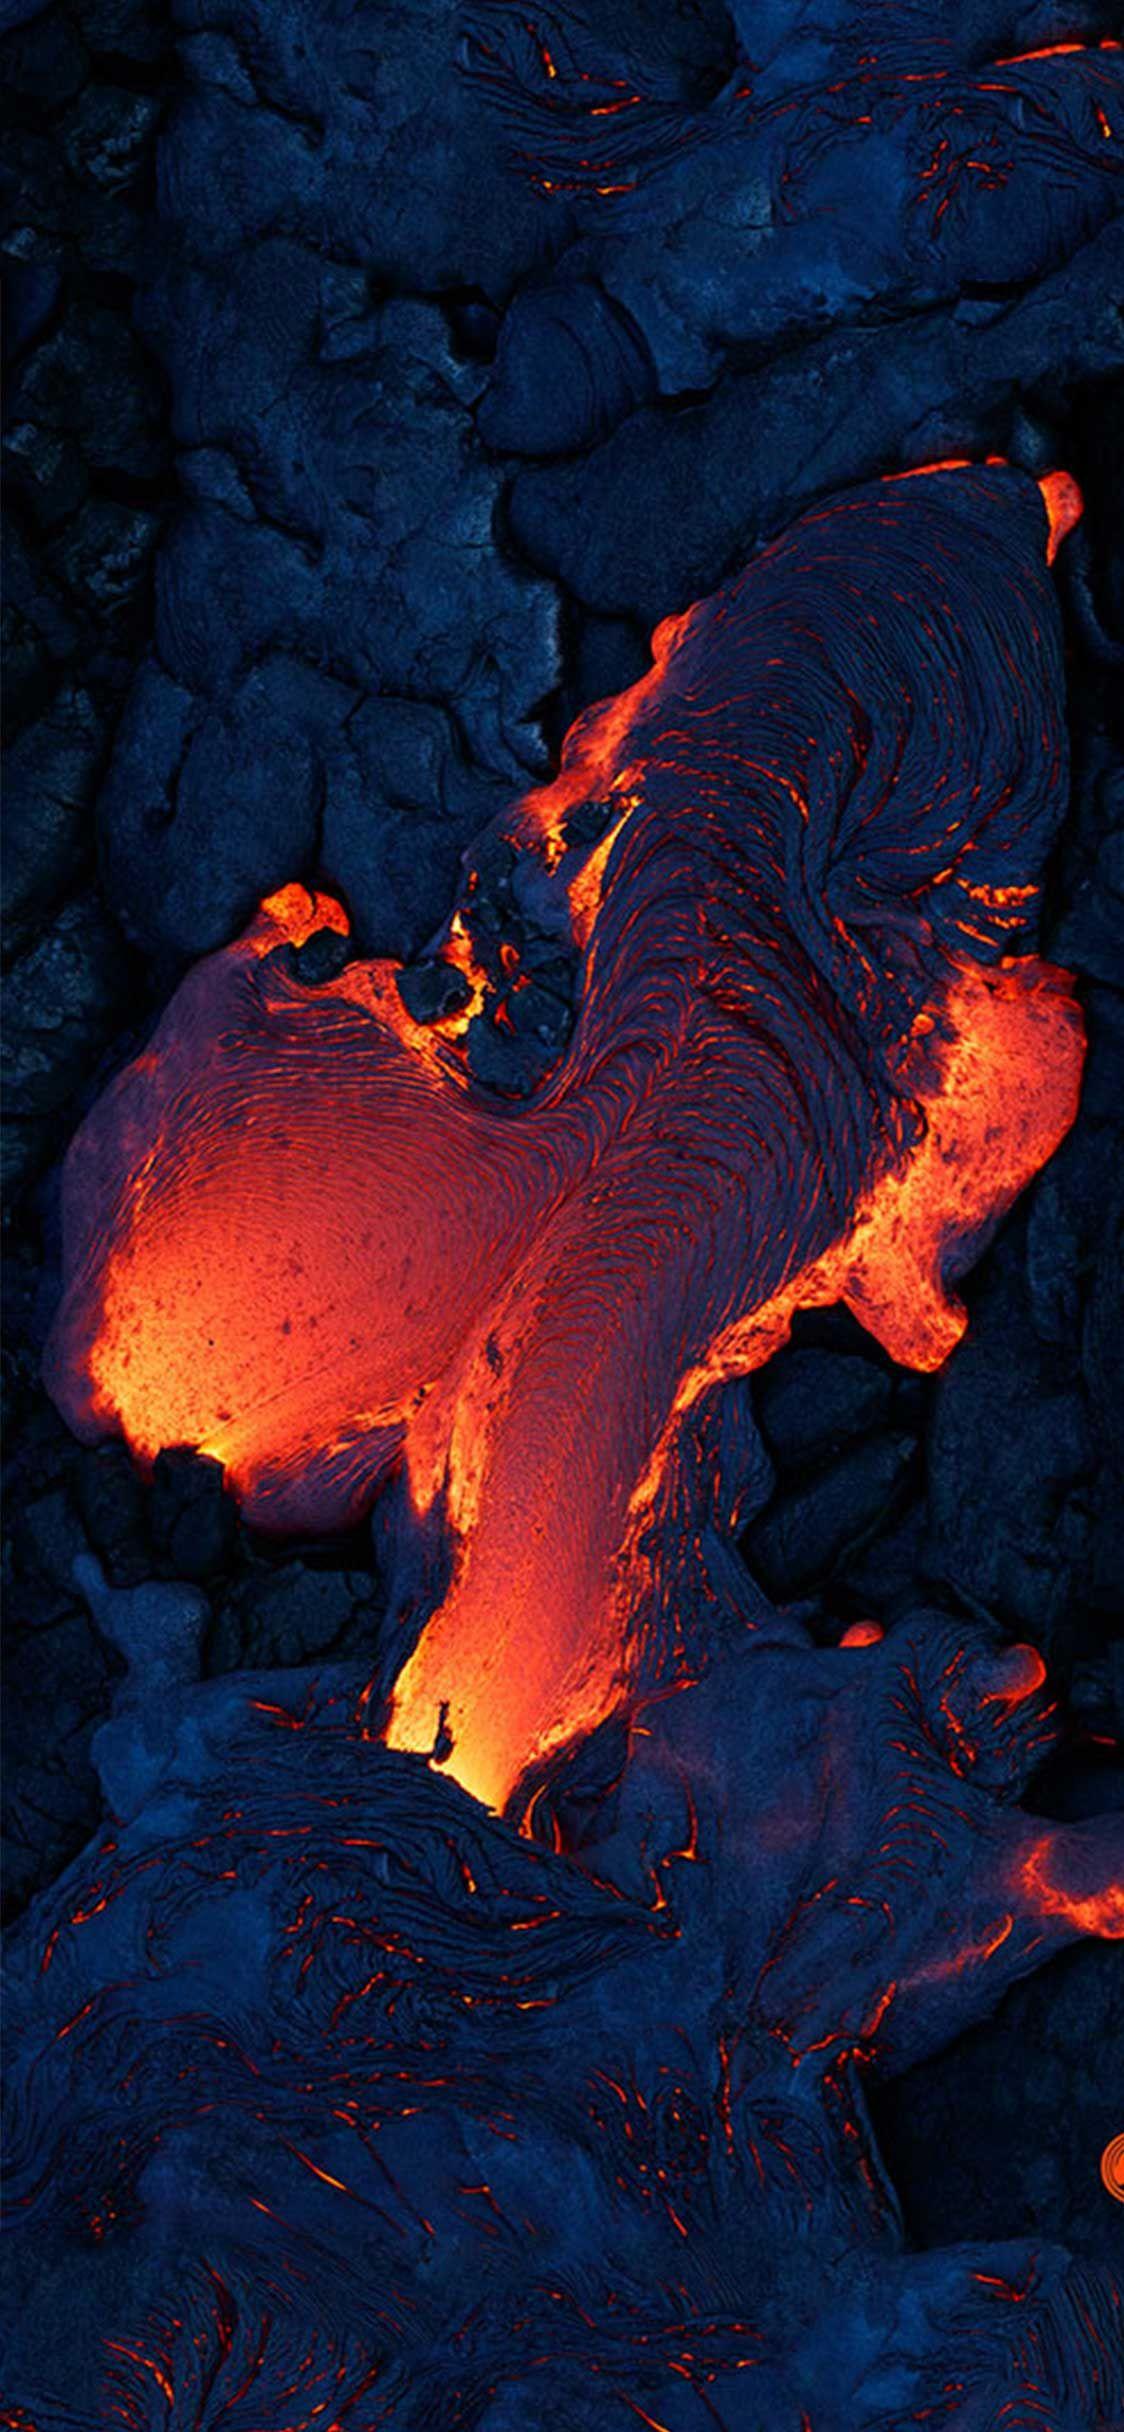 Volcano Lava. IPhone IPad Wallpaper In 2019. IPhone Wallpaper